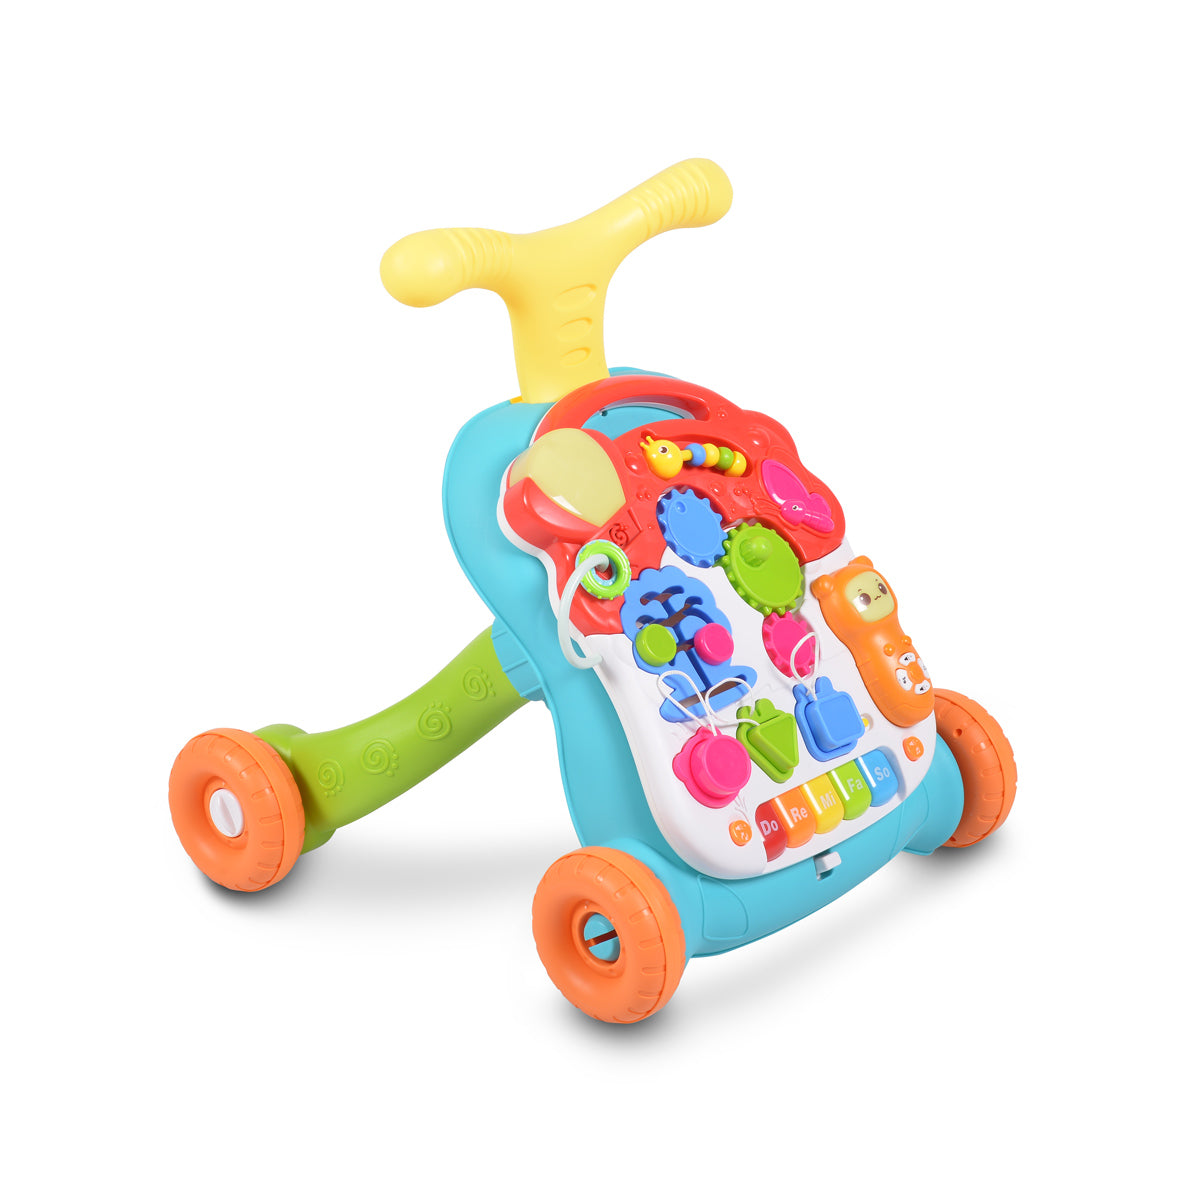 Moni Toys Играчка за прохождане Walker 2в1 N5218 оранжев